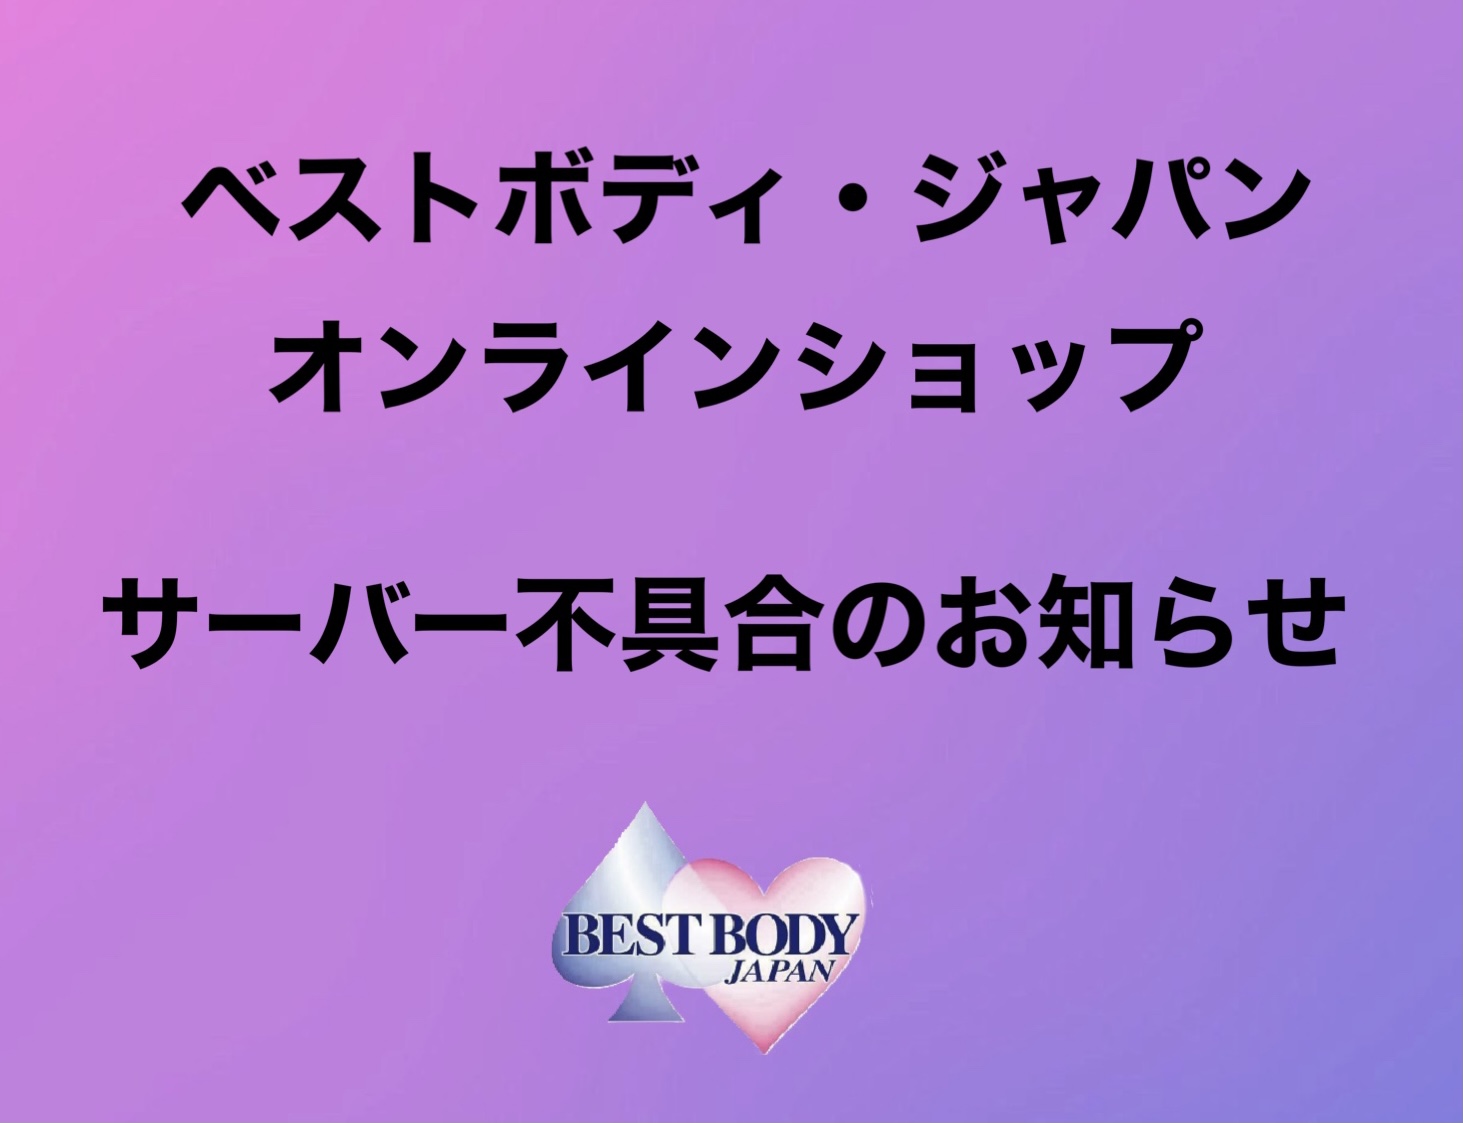 ベストボディ・ジャパンオンラインショップサーバー不具合のお知らせ – BEST BODY JAPAN